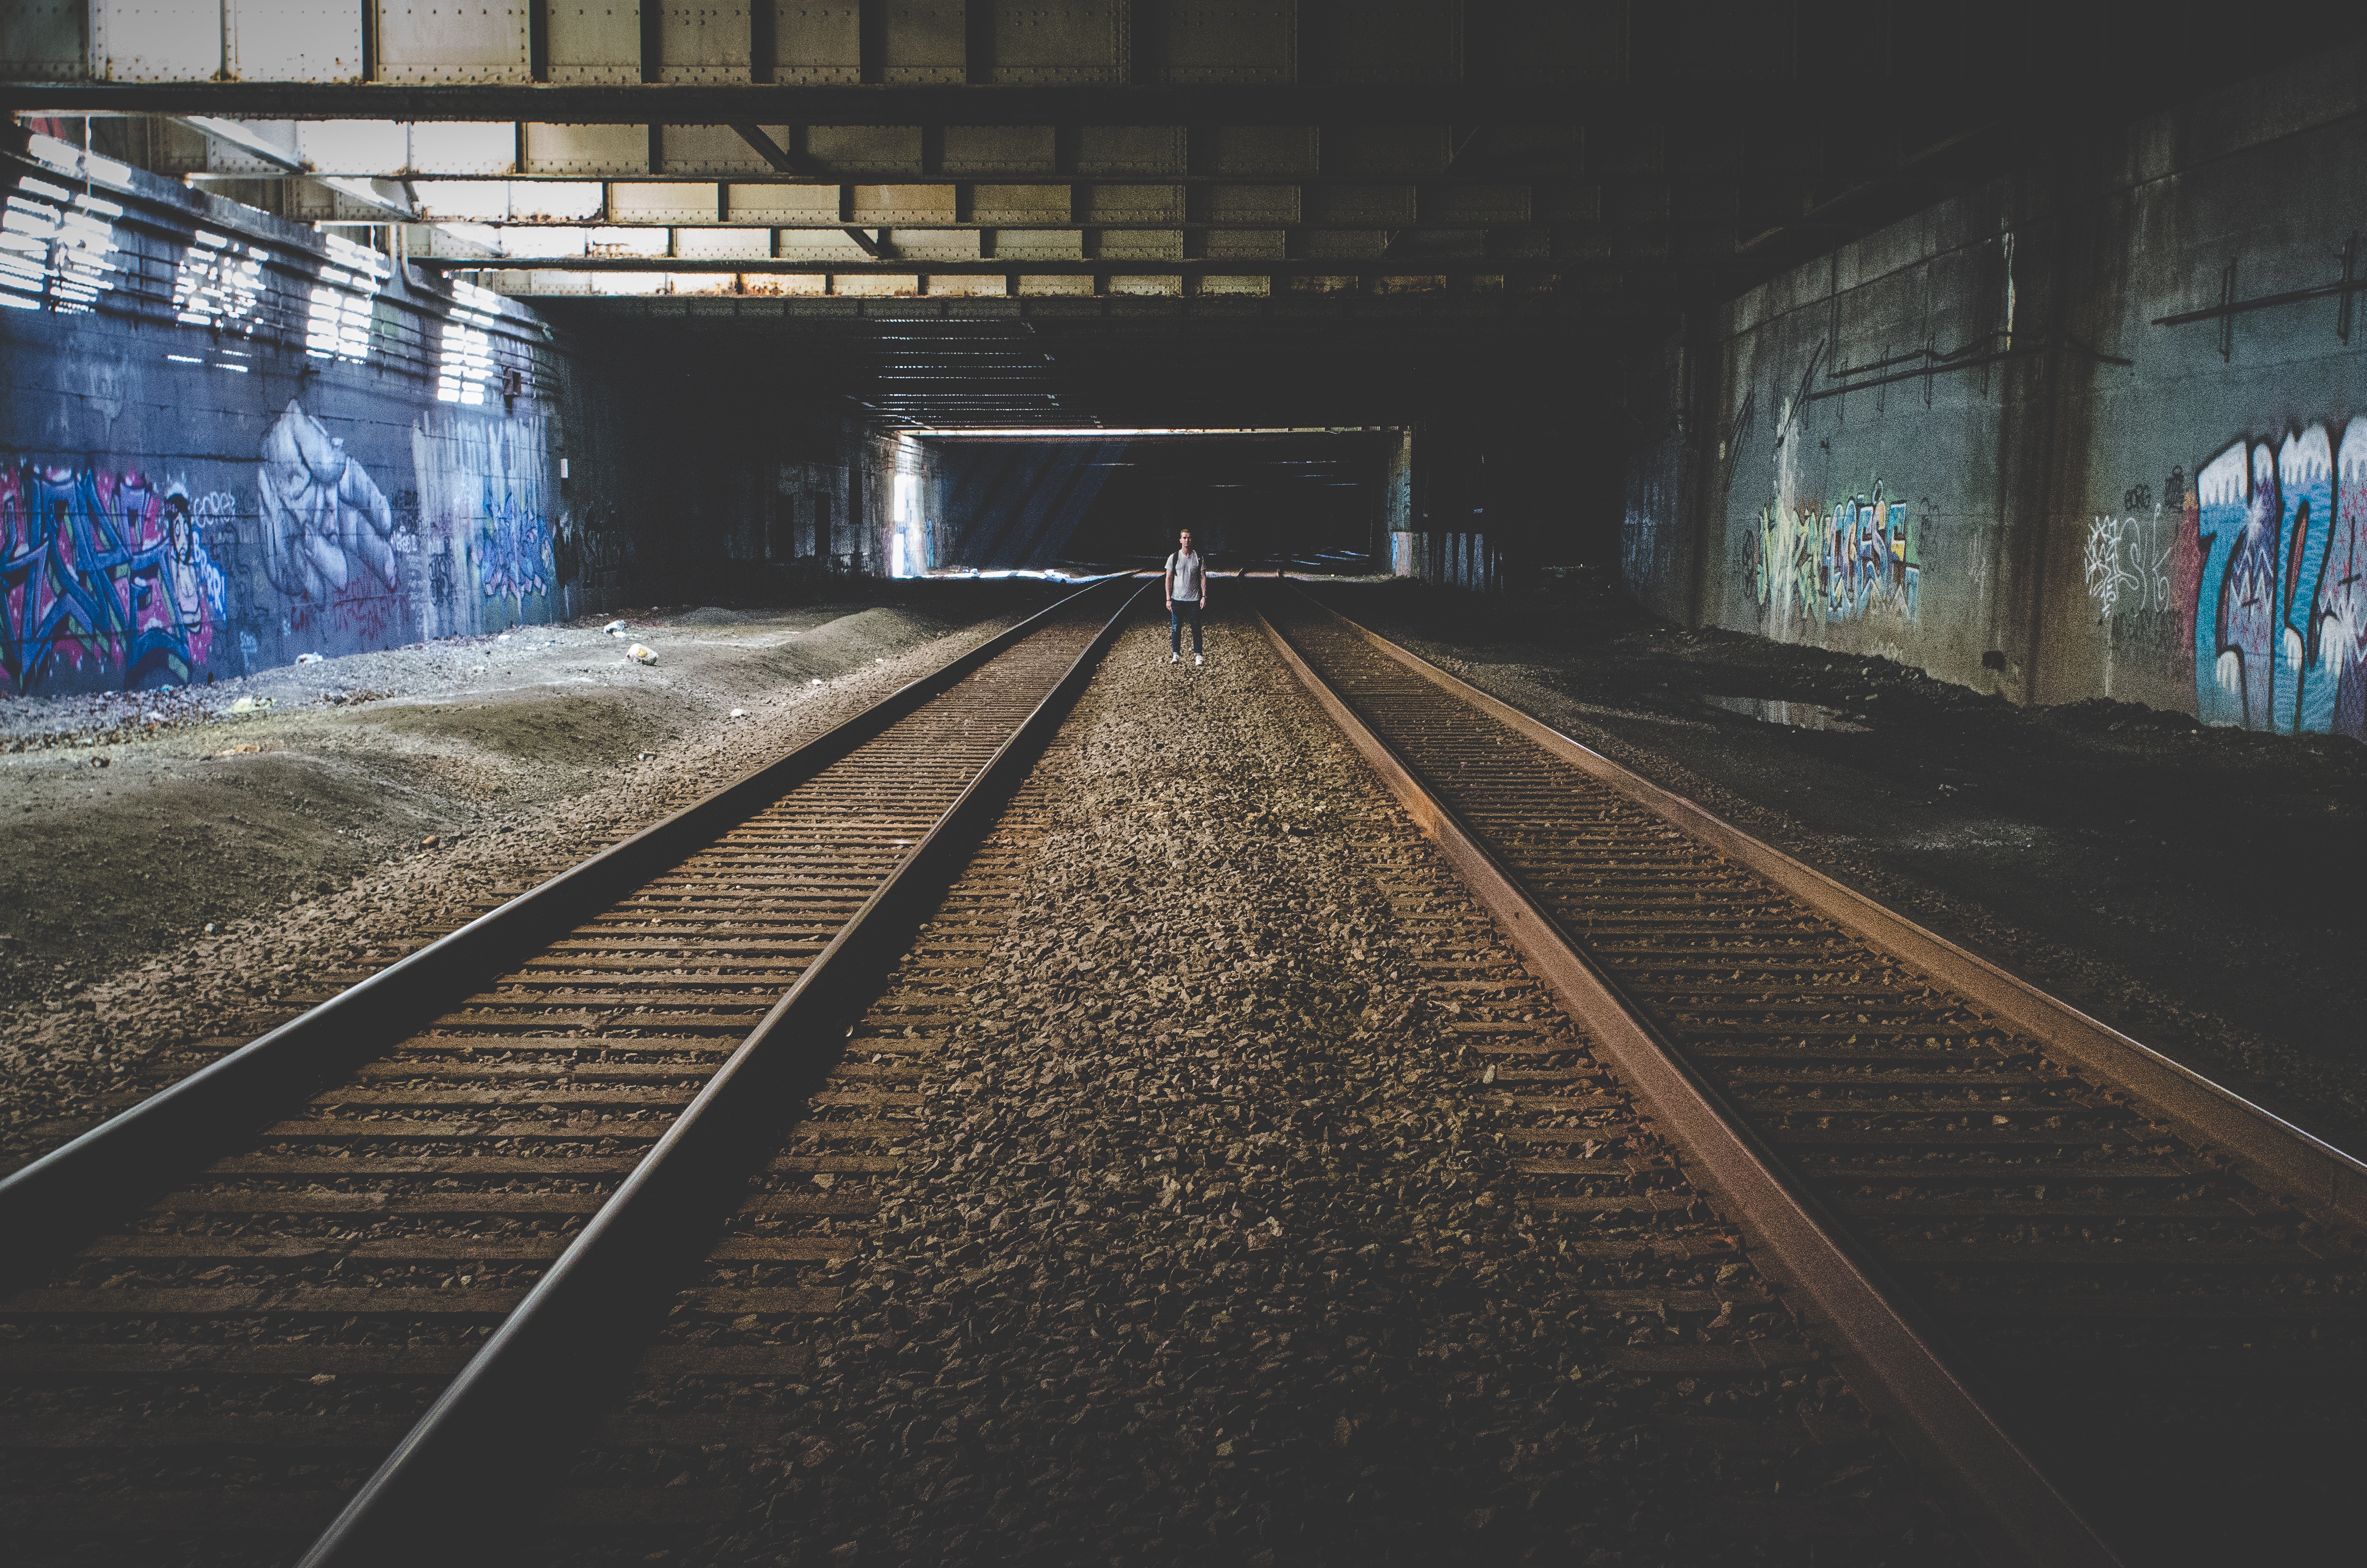 Alone in Train Tunnel, Alone, Person, Rails, Track, HQ Photo